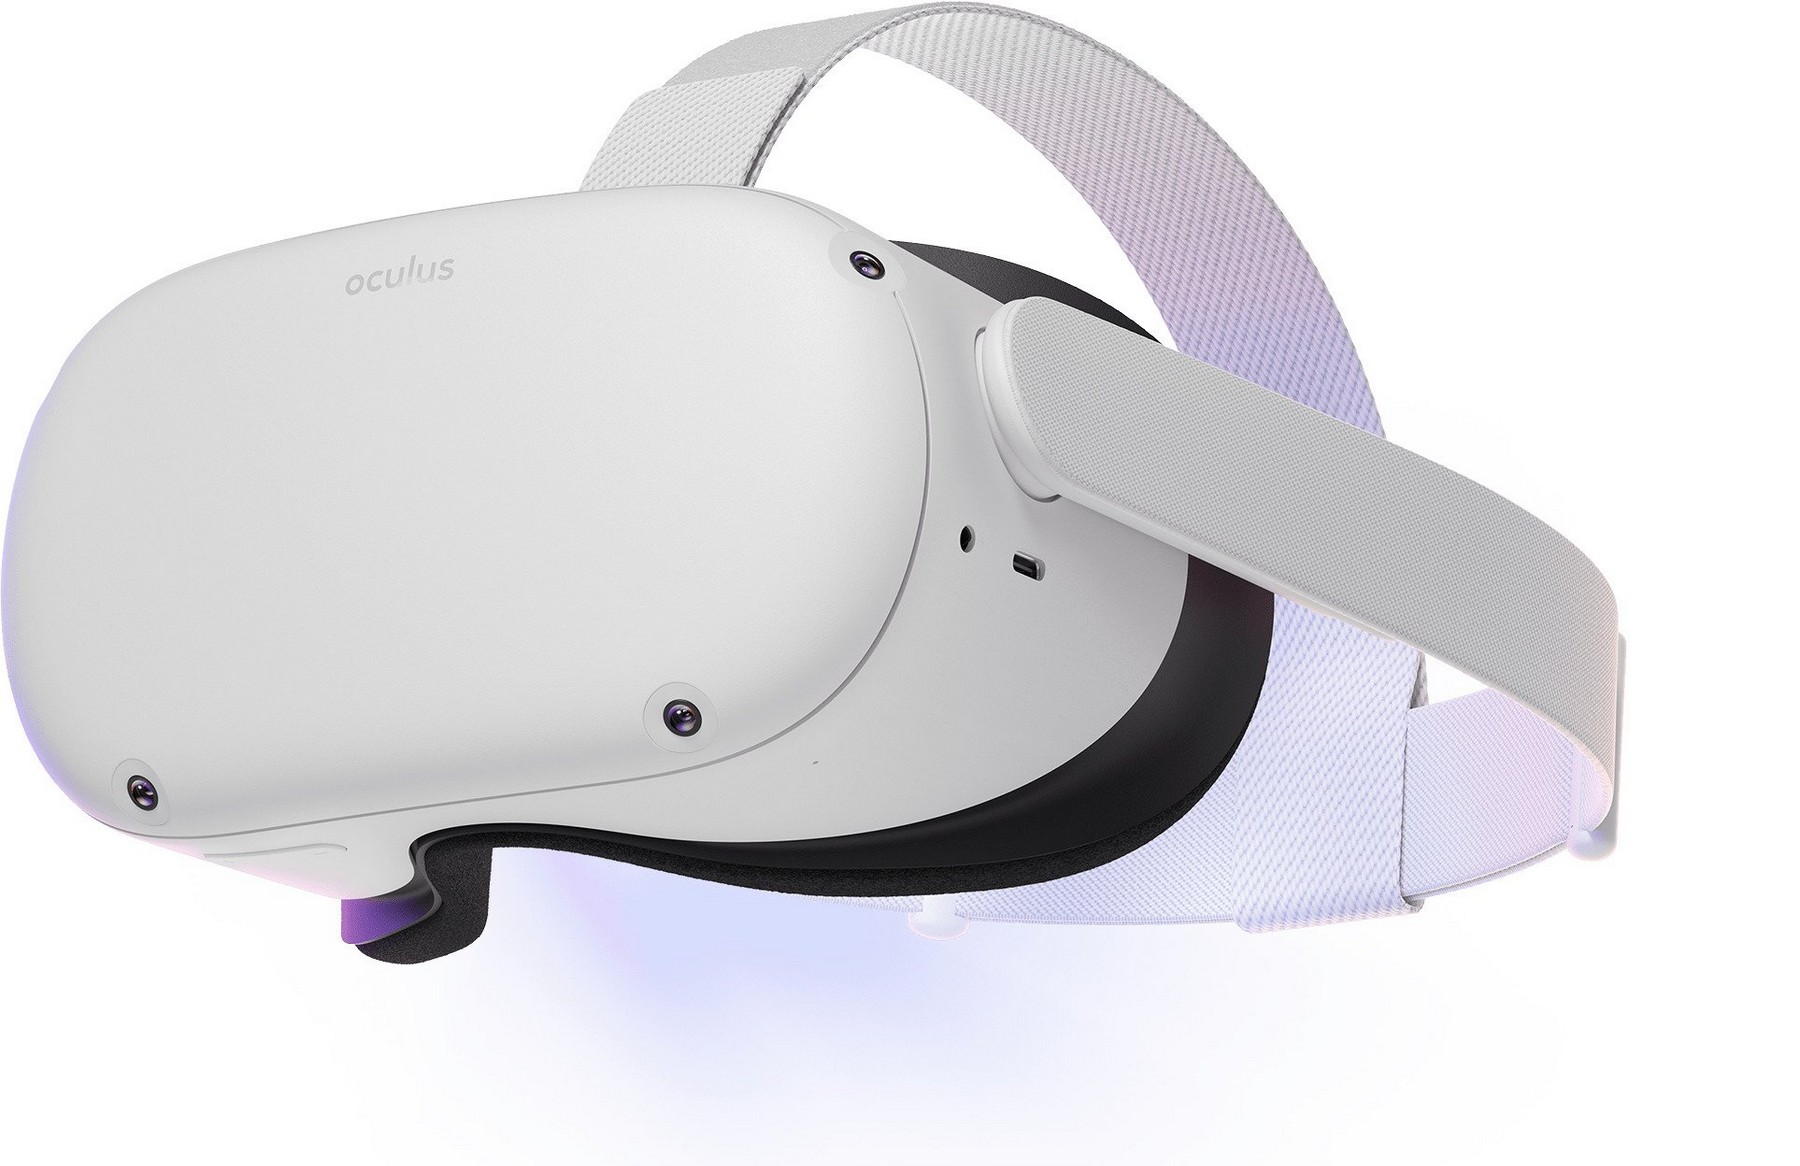 Facebooknovo Oculus Quest 2 O fone de ouvido VR é mais nítido, rápido e também mais barato por US $ 299 3